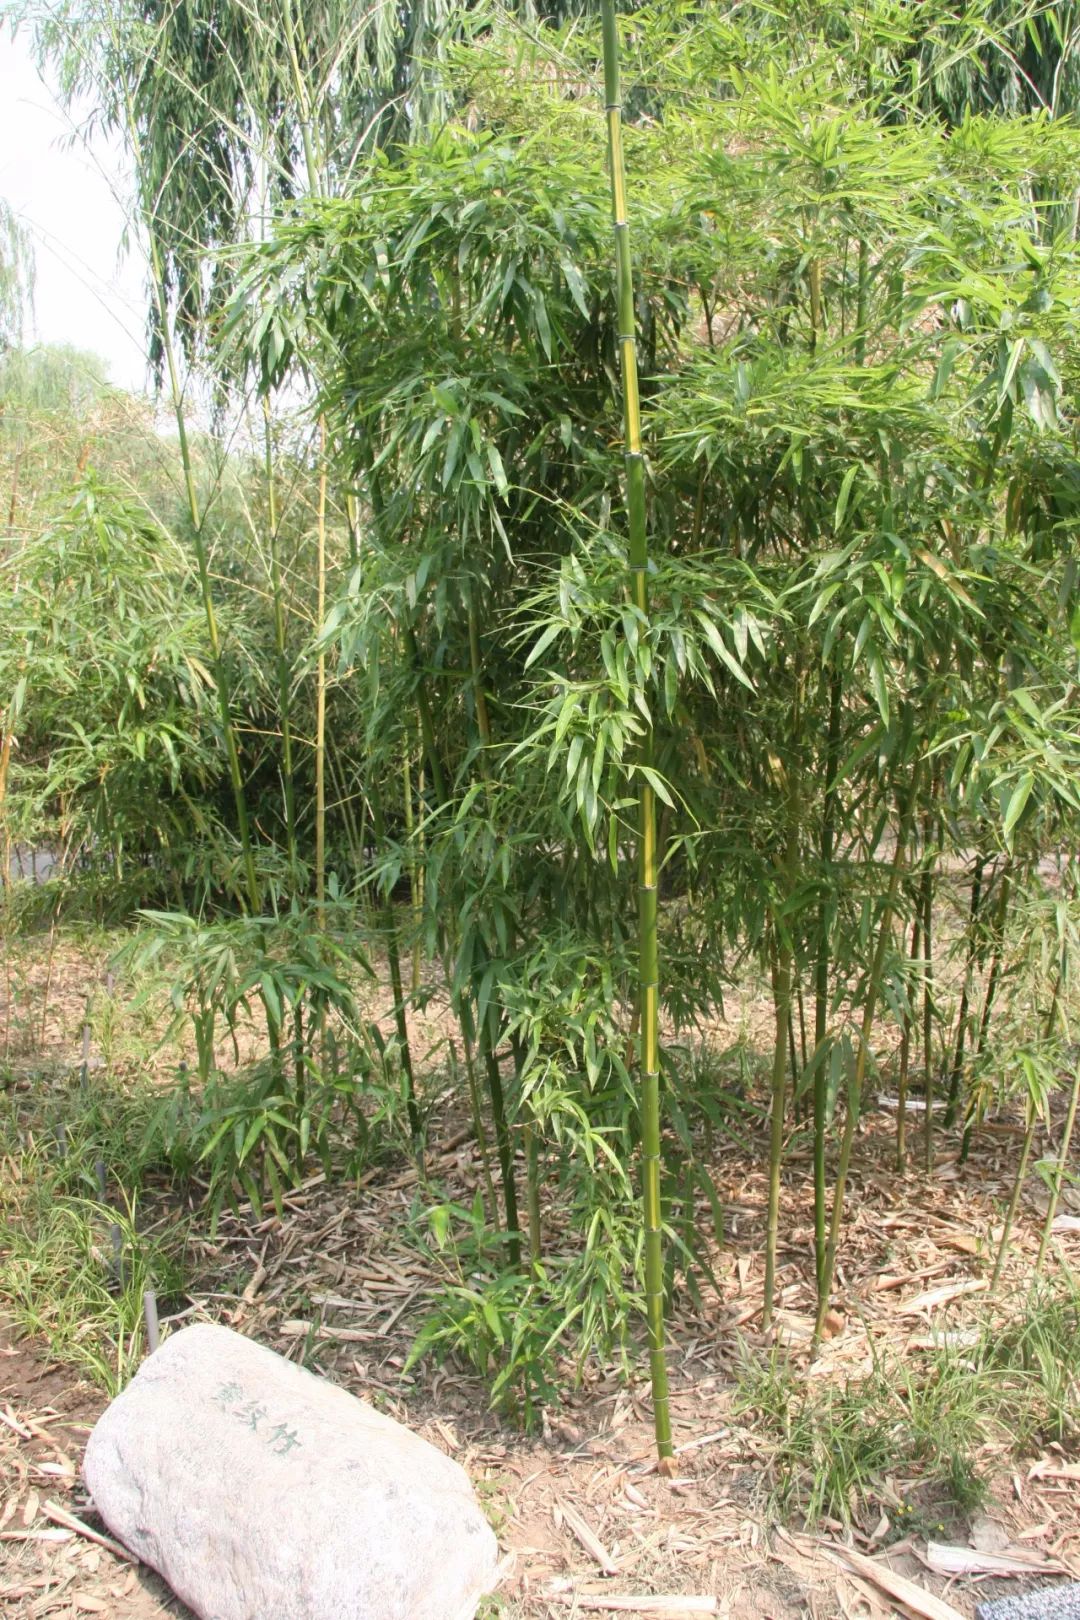 主要有箬竹,菲白竹,翠竹,黄条金刚竹,铺地竹等,还增加了适合盆栽的竹